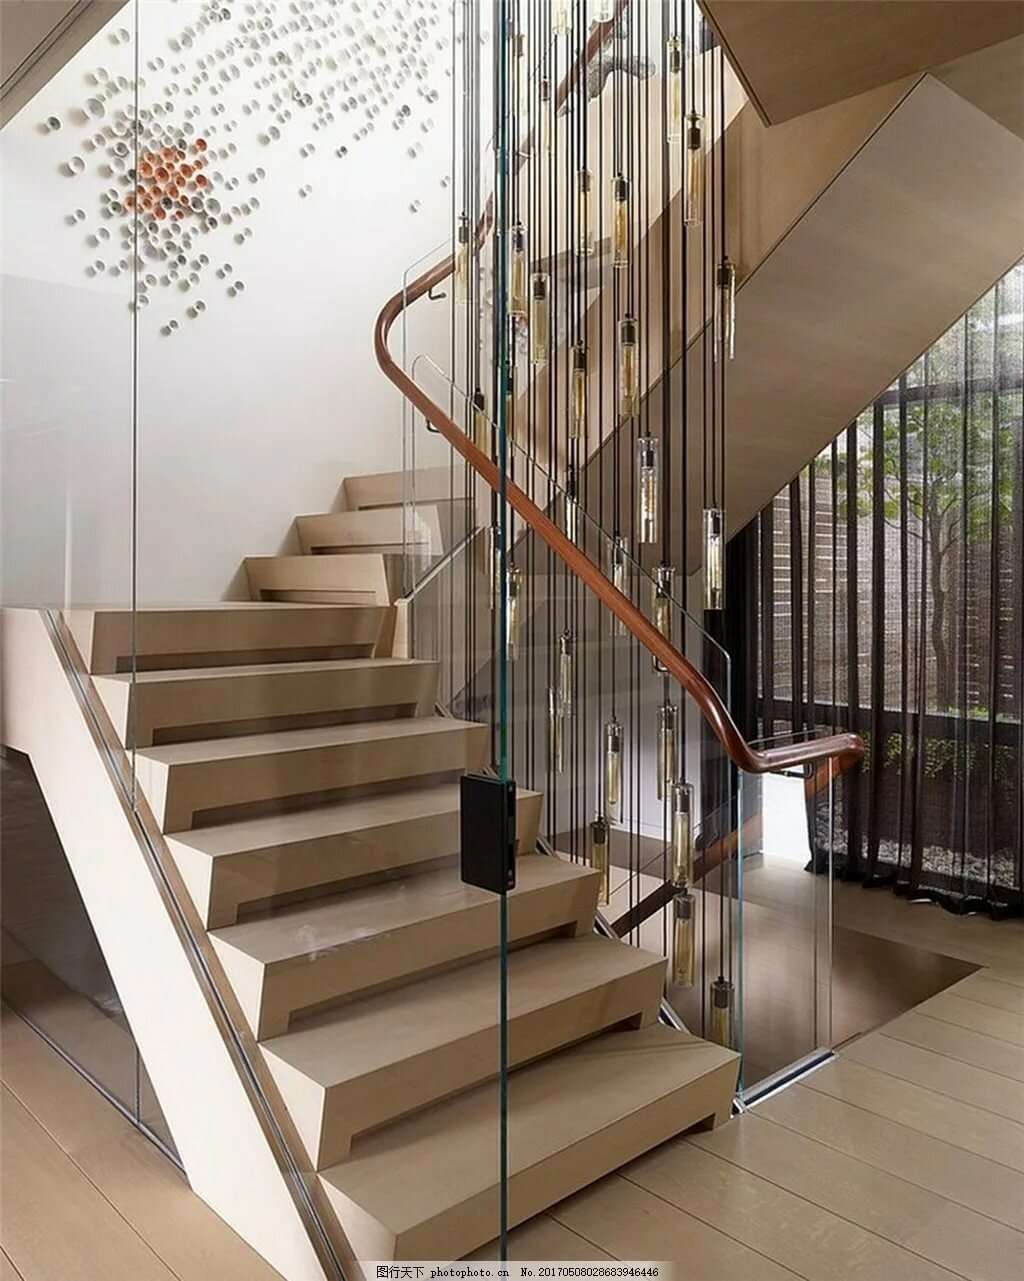 Стильные лестницы отзывы. Современные лестницы. Лестница в современном стиле. Современная лестница в доме. Лестница в интерьере.